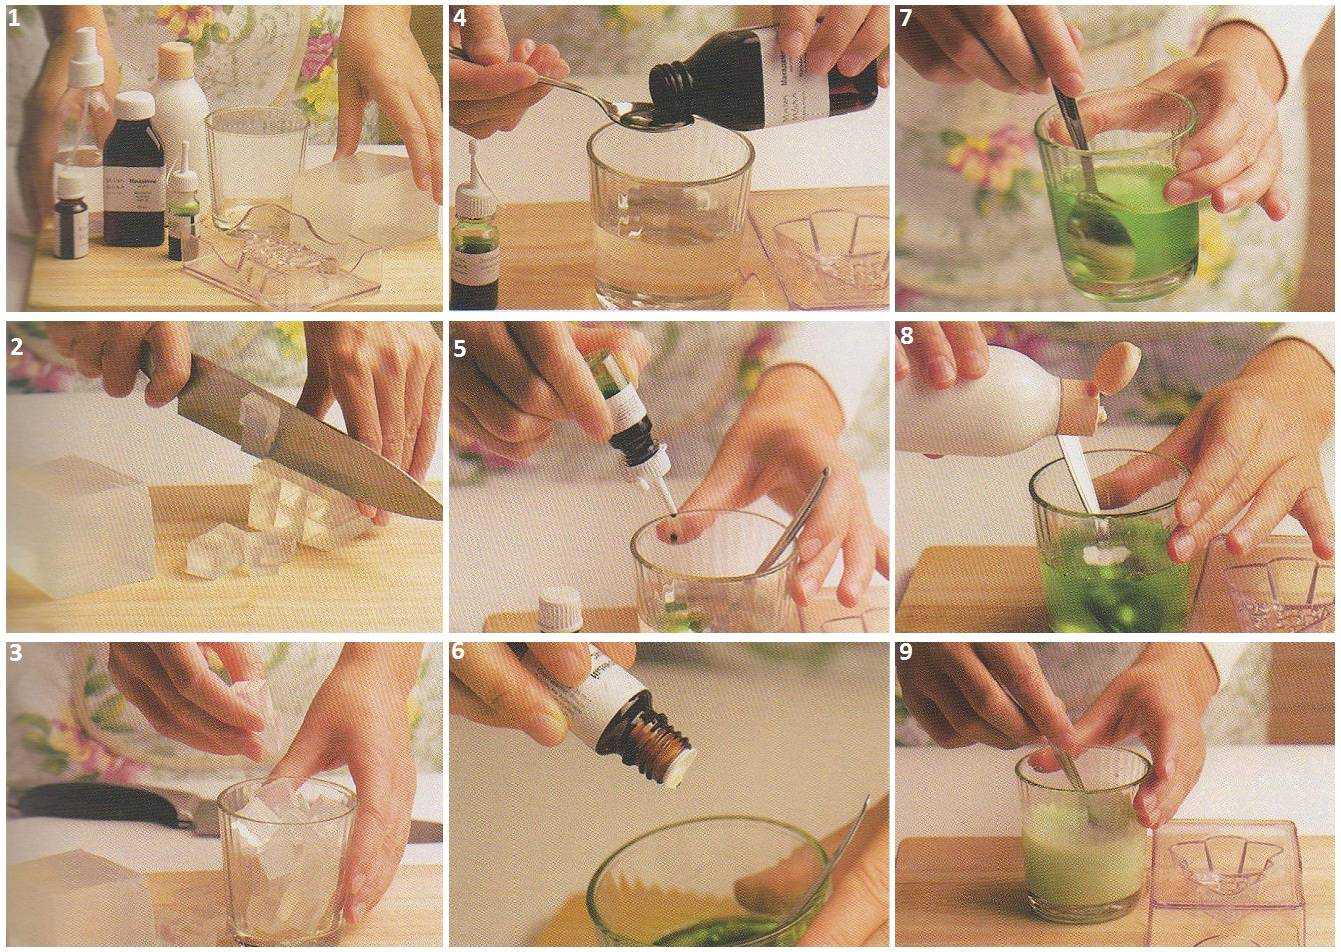 Как сделать жидкое мыло для рук в домашних условиях: рецепты приготовления и идеи, отзывы и видео